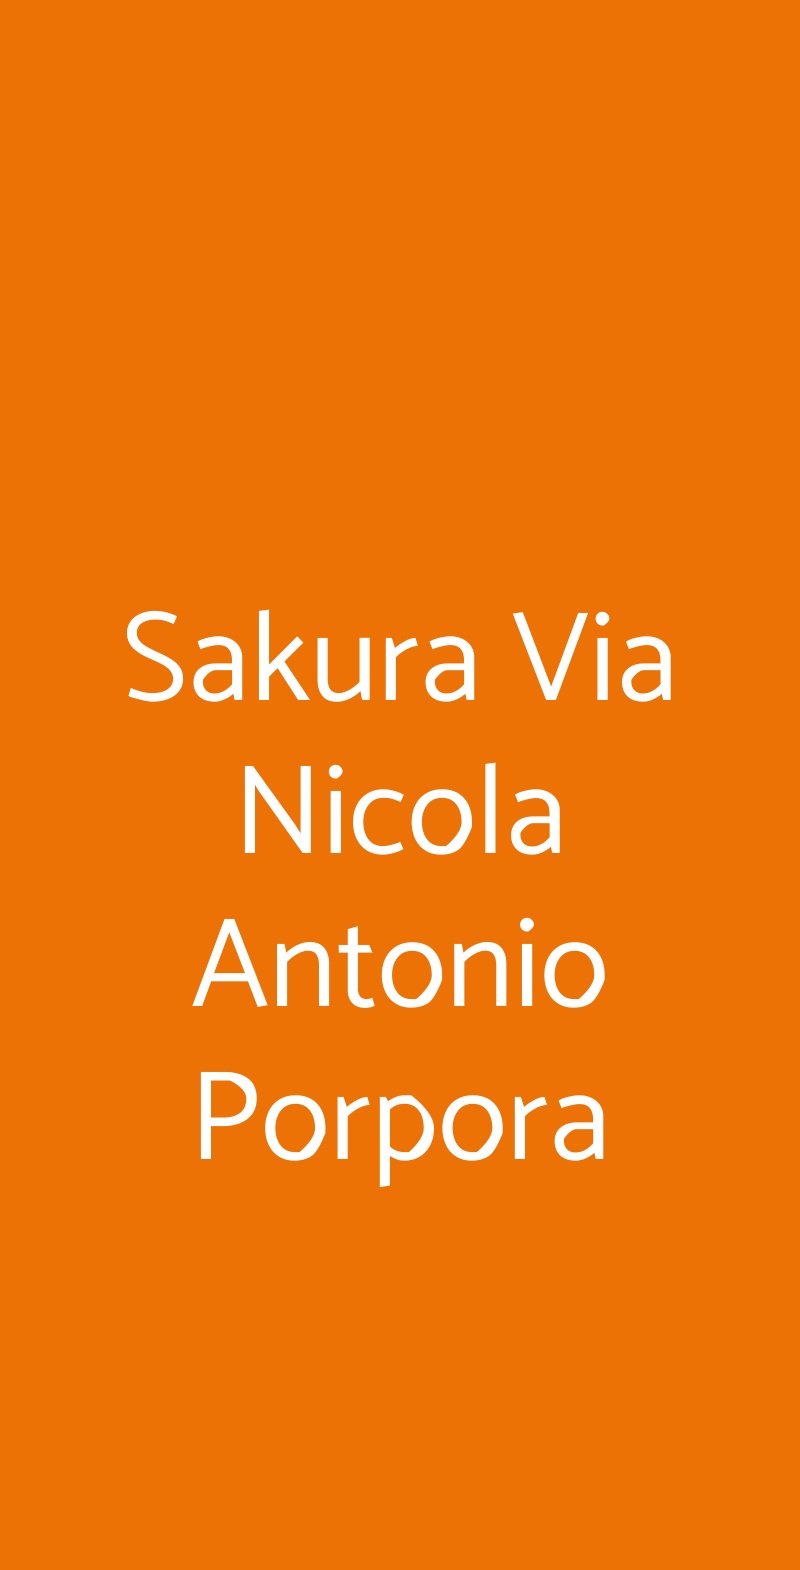 Sakura Via Nicola Antonio Porpora Milano menù 1 pagina